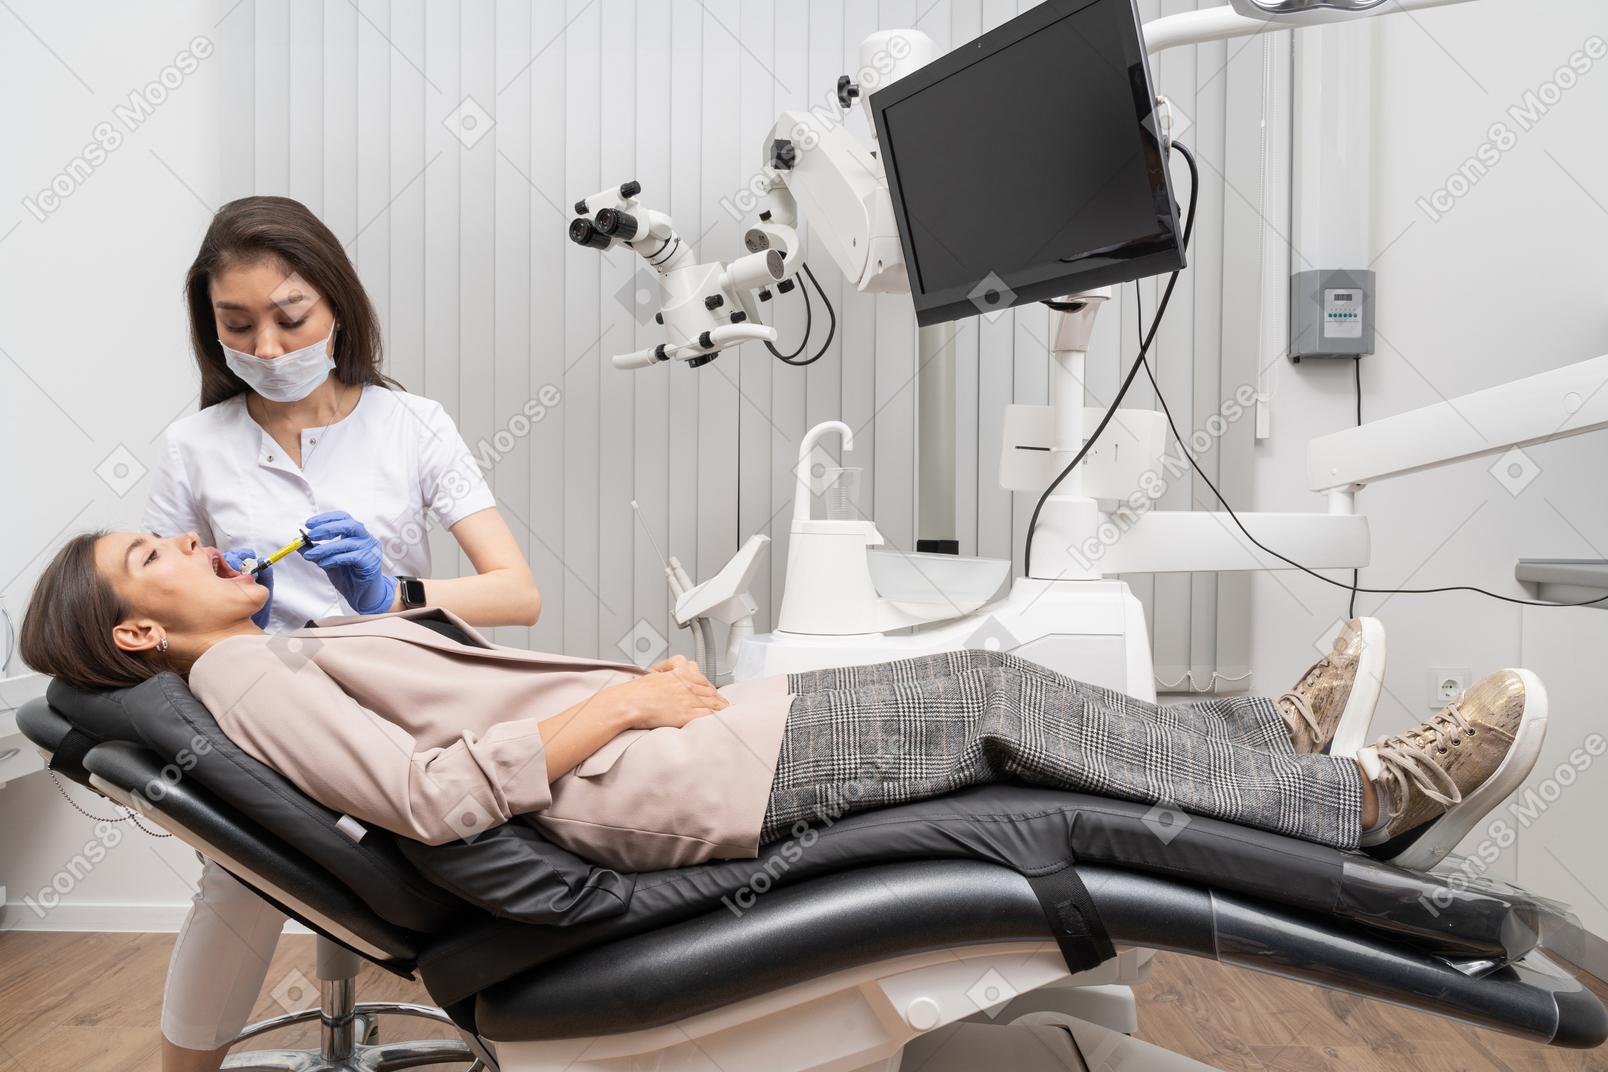 병원 캐비닛에서 그녀의 여성 환자에게 주사를하는 여성 치과 의사의 전체 길이